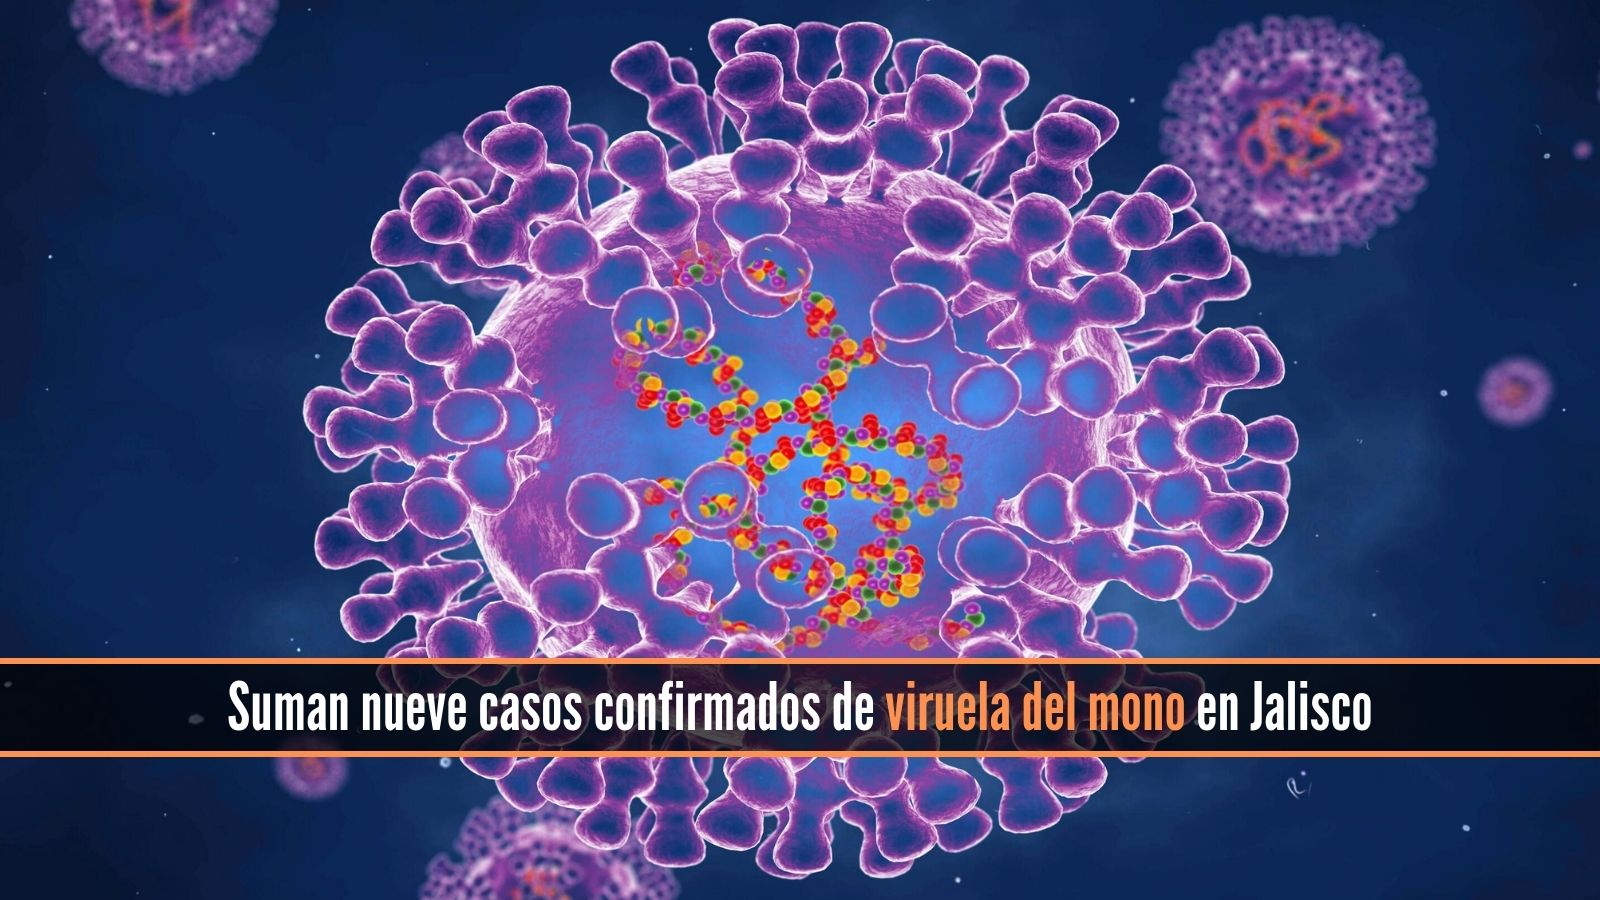 Suman nueve casos de viruela del mono en Jalisco